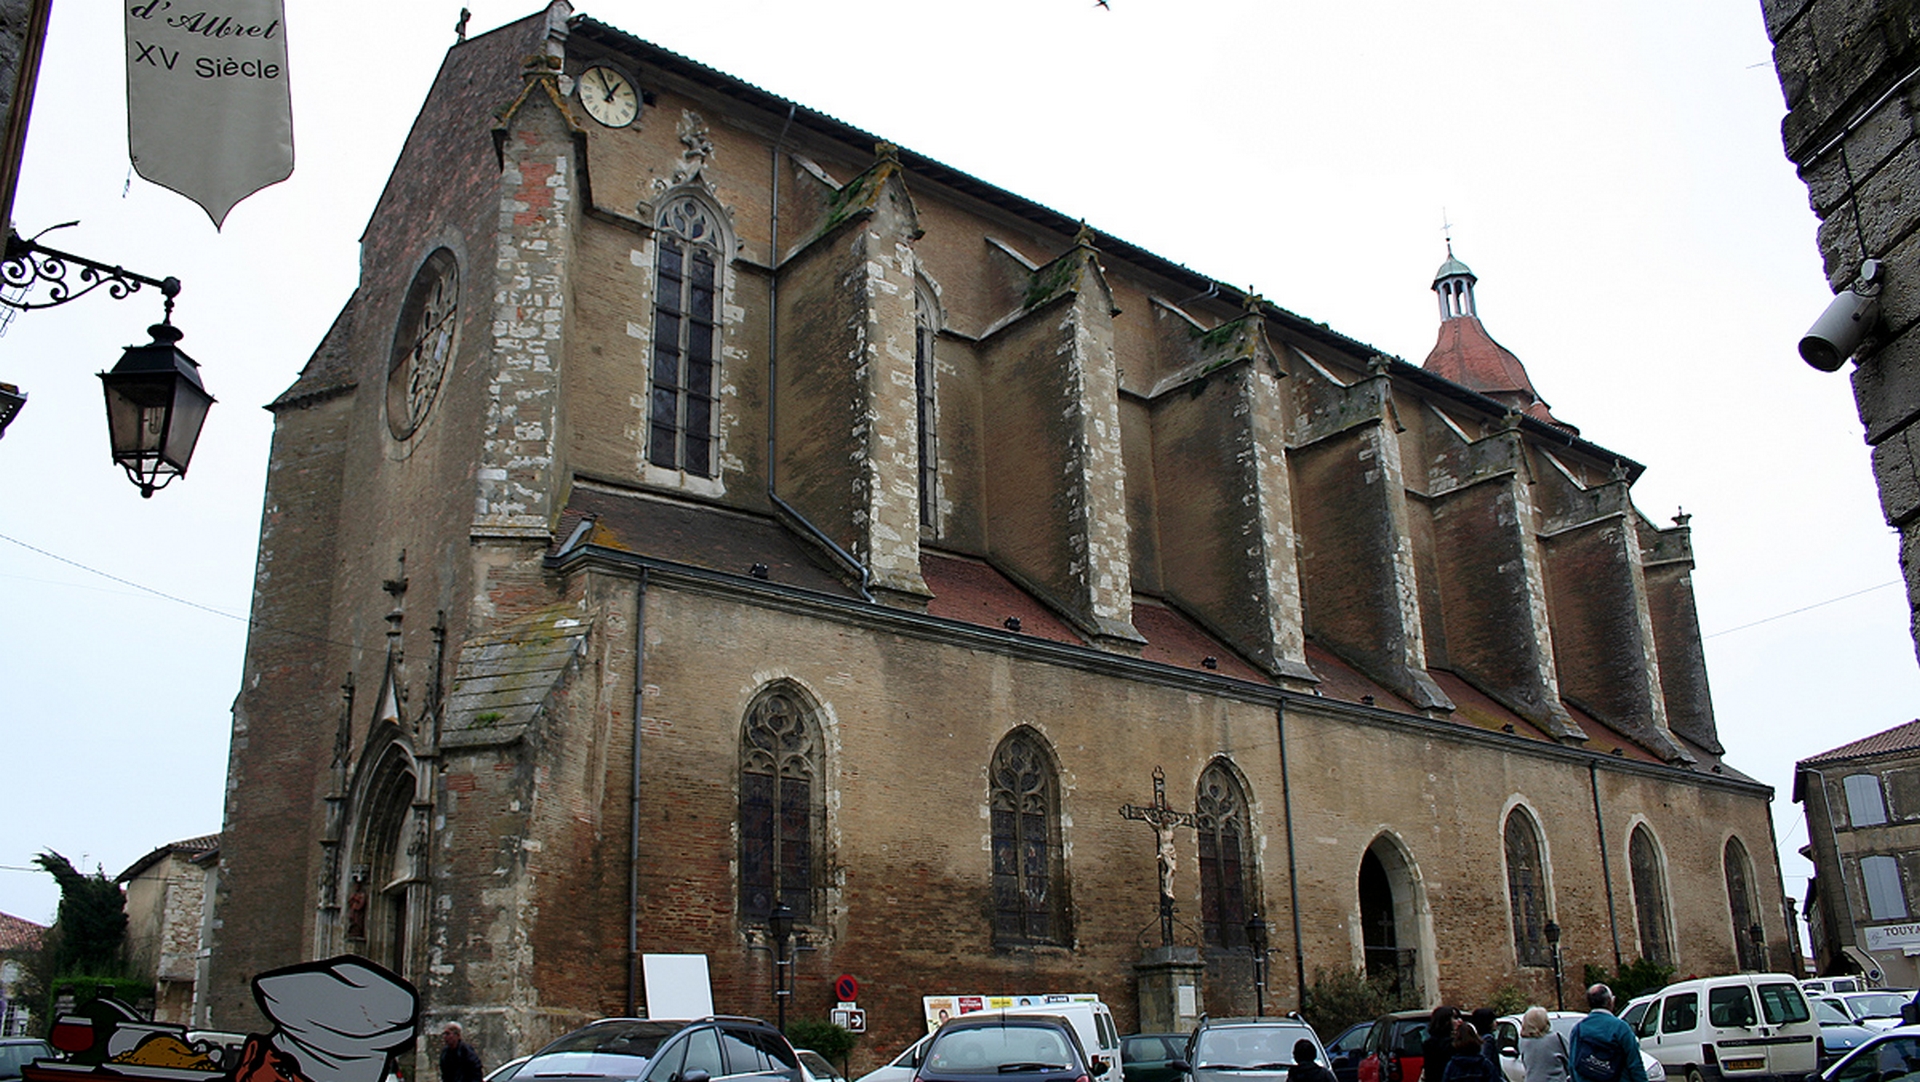 La cathédrale Saint-Luperc, à Eauzes, dans le Gers | Jean-noël Lafargue Free art license 